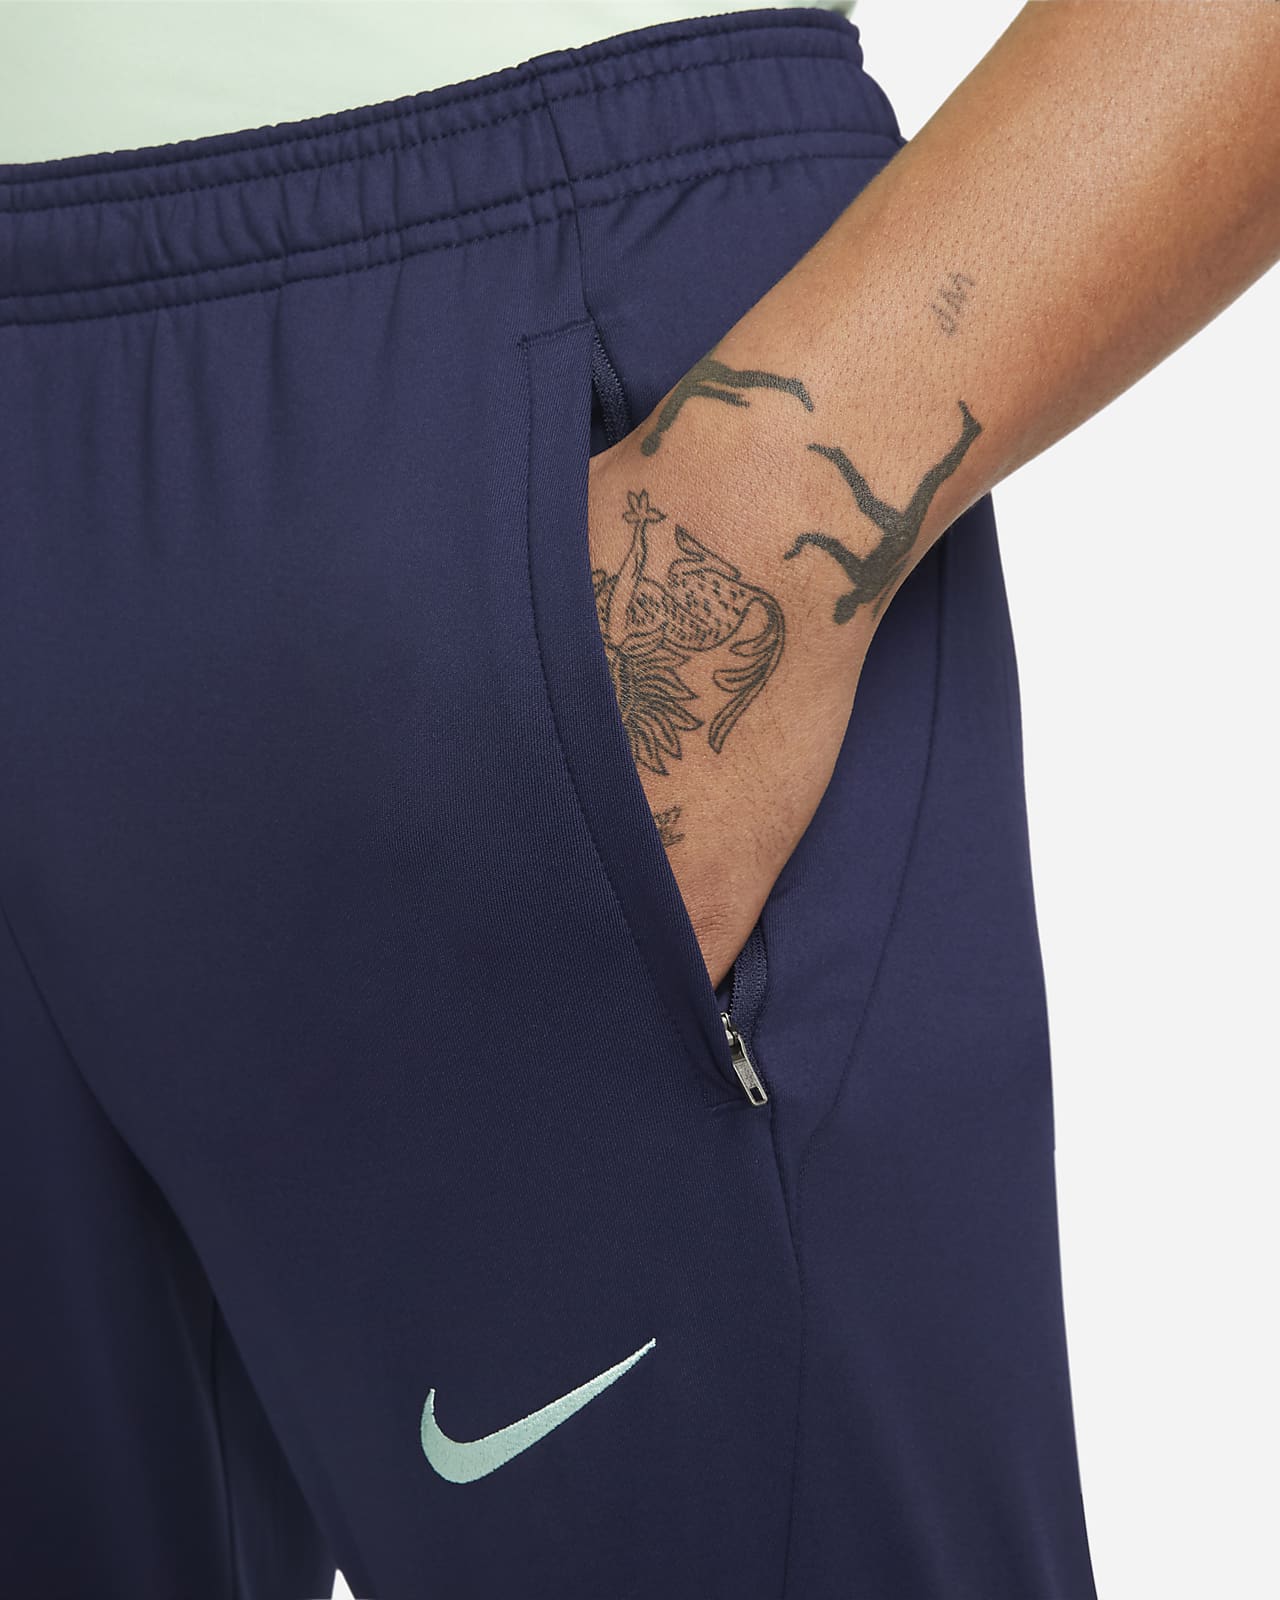 Brazil Strike Men's Nike Dri-FIT Knit Soccer Pants.